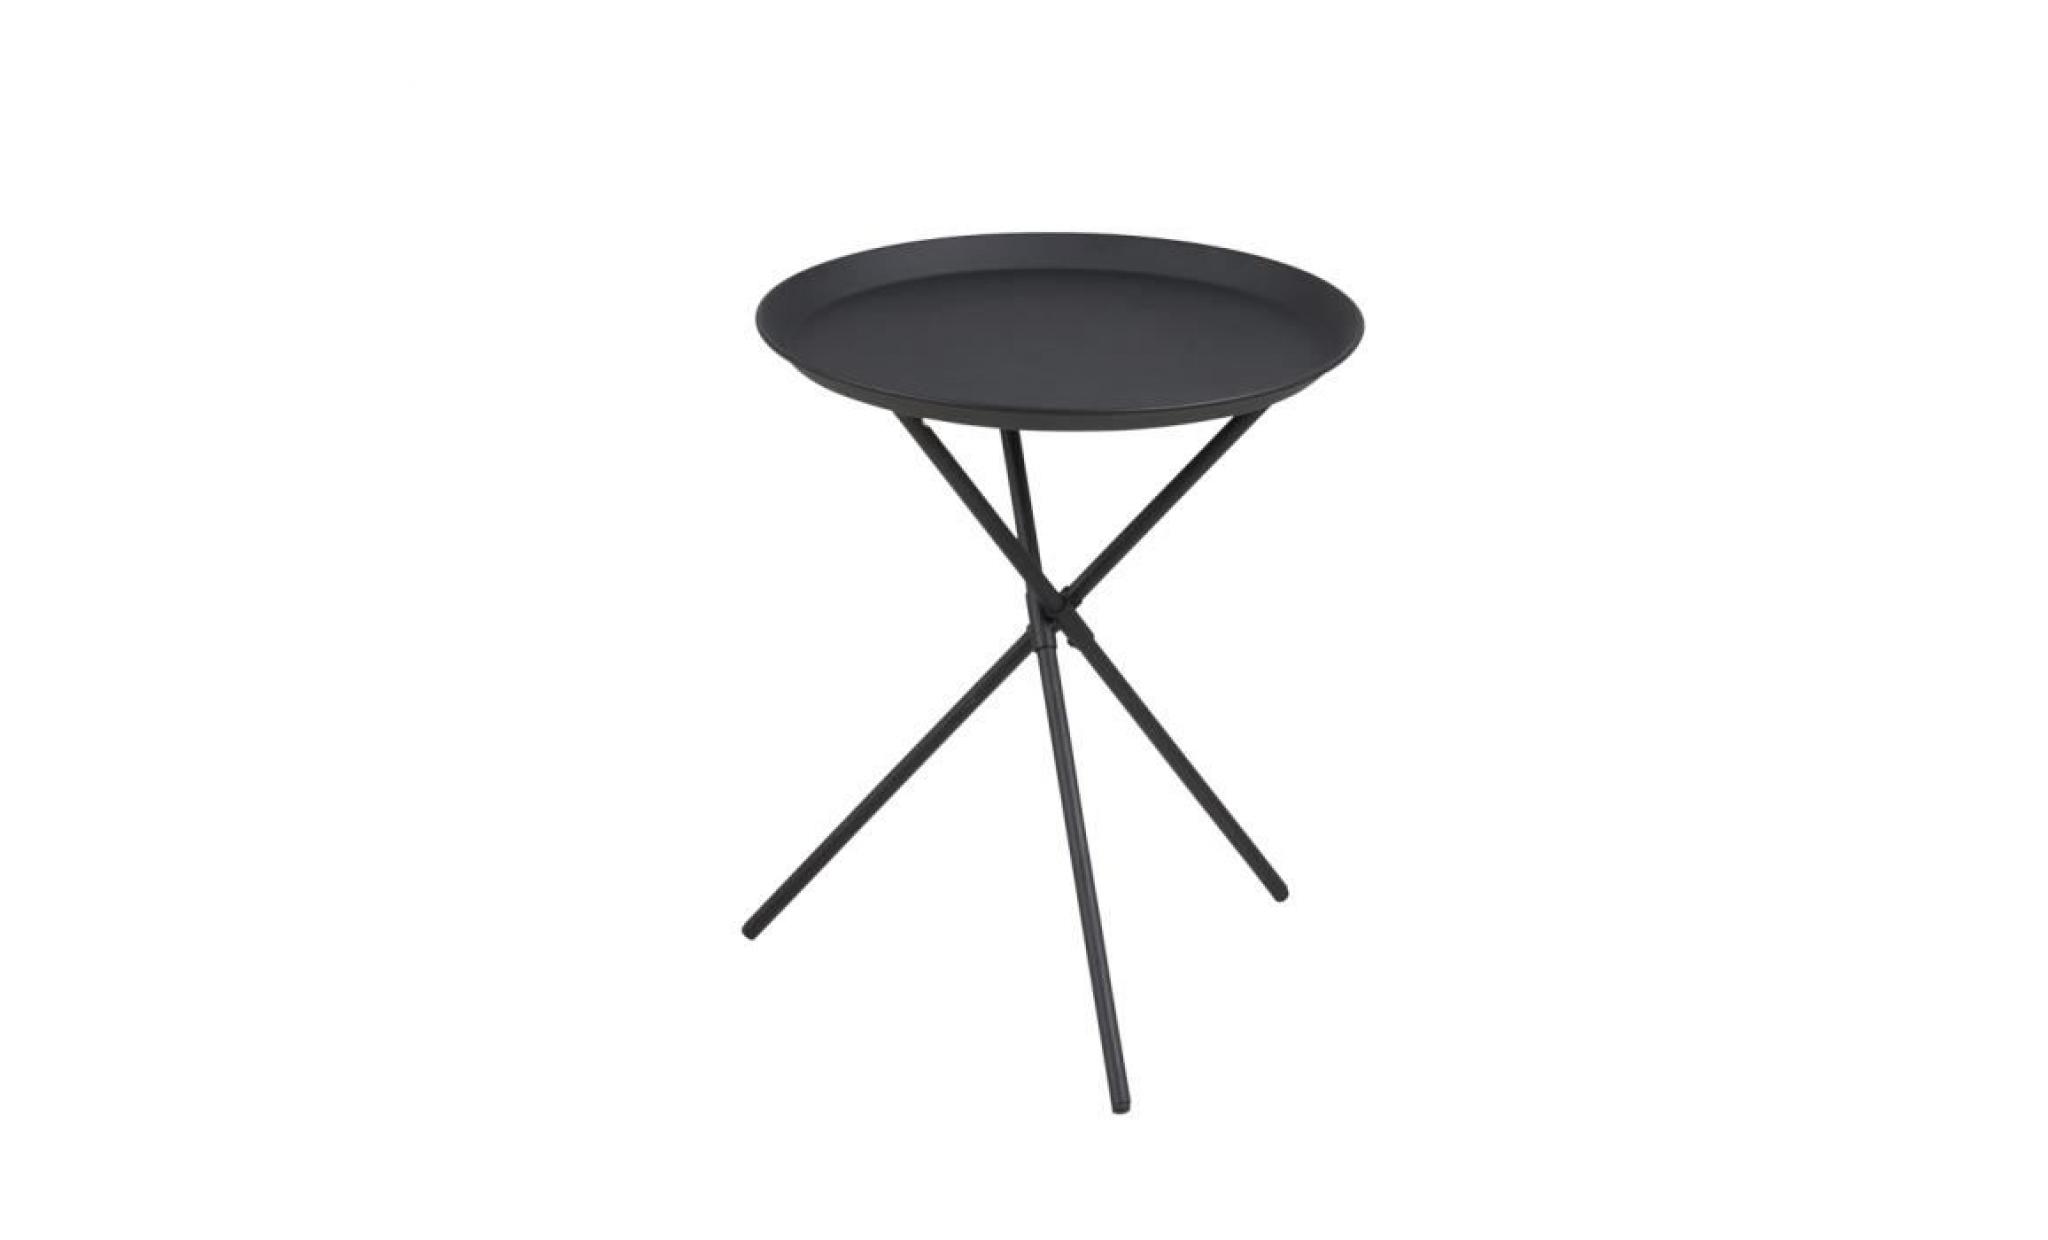 table basse / table d’appoint   sparky   38,5 cm   gris   métal revêtu de poudre   style scandinave   style industriel pas cher